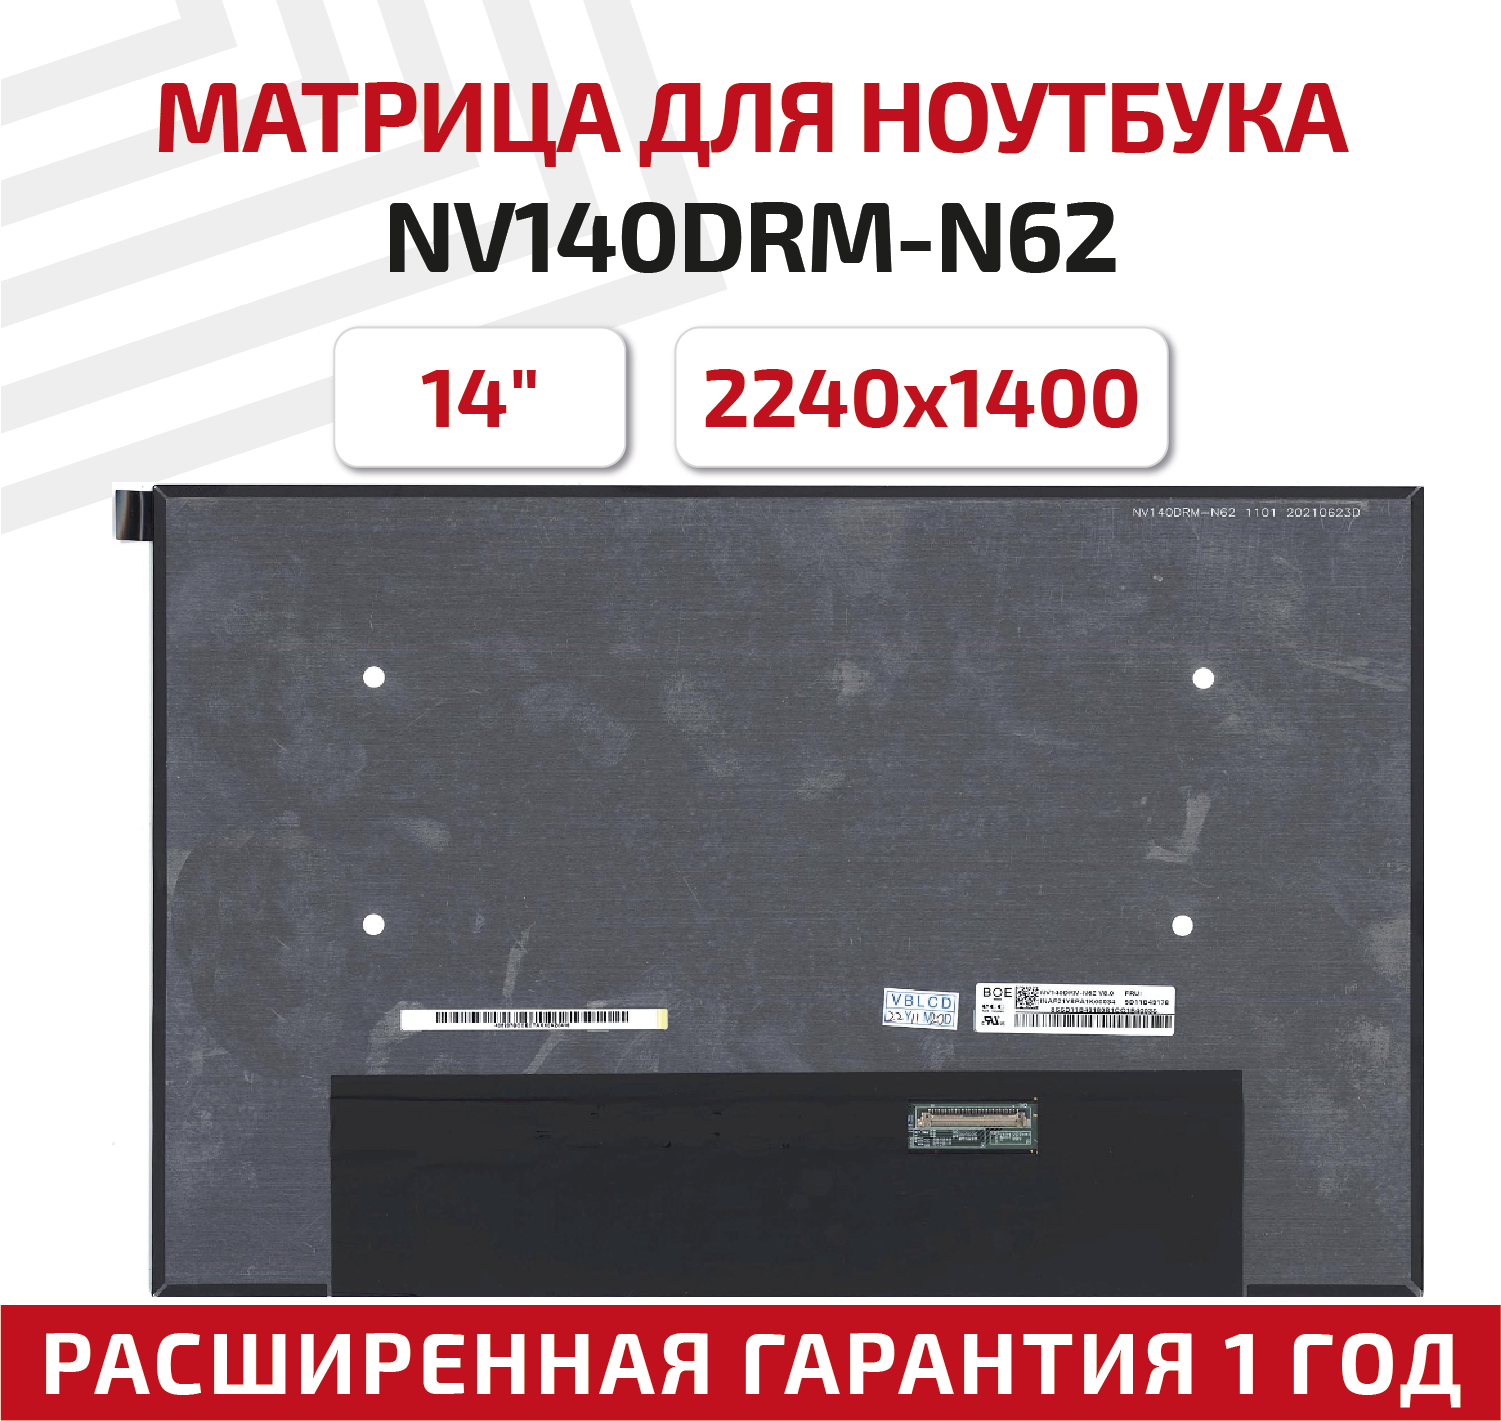 Матрица (экран) для ноутбука NV140DRM-N62, 14", 2240x1400, 40-pin, UltraSlim, светодиодная (LED), матовая